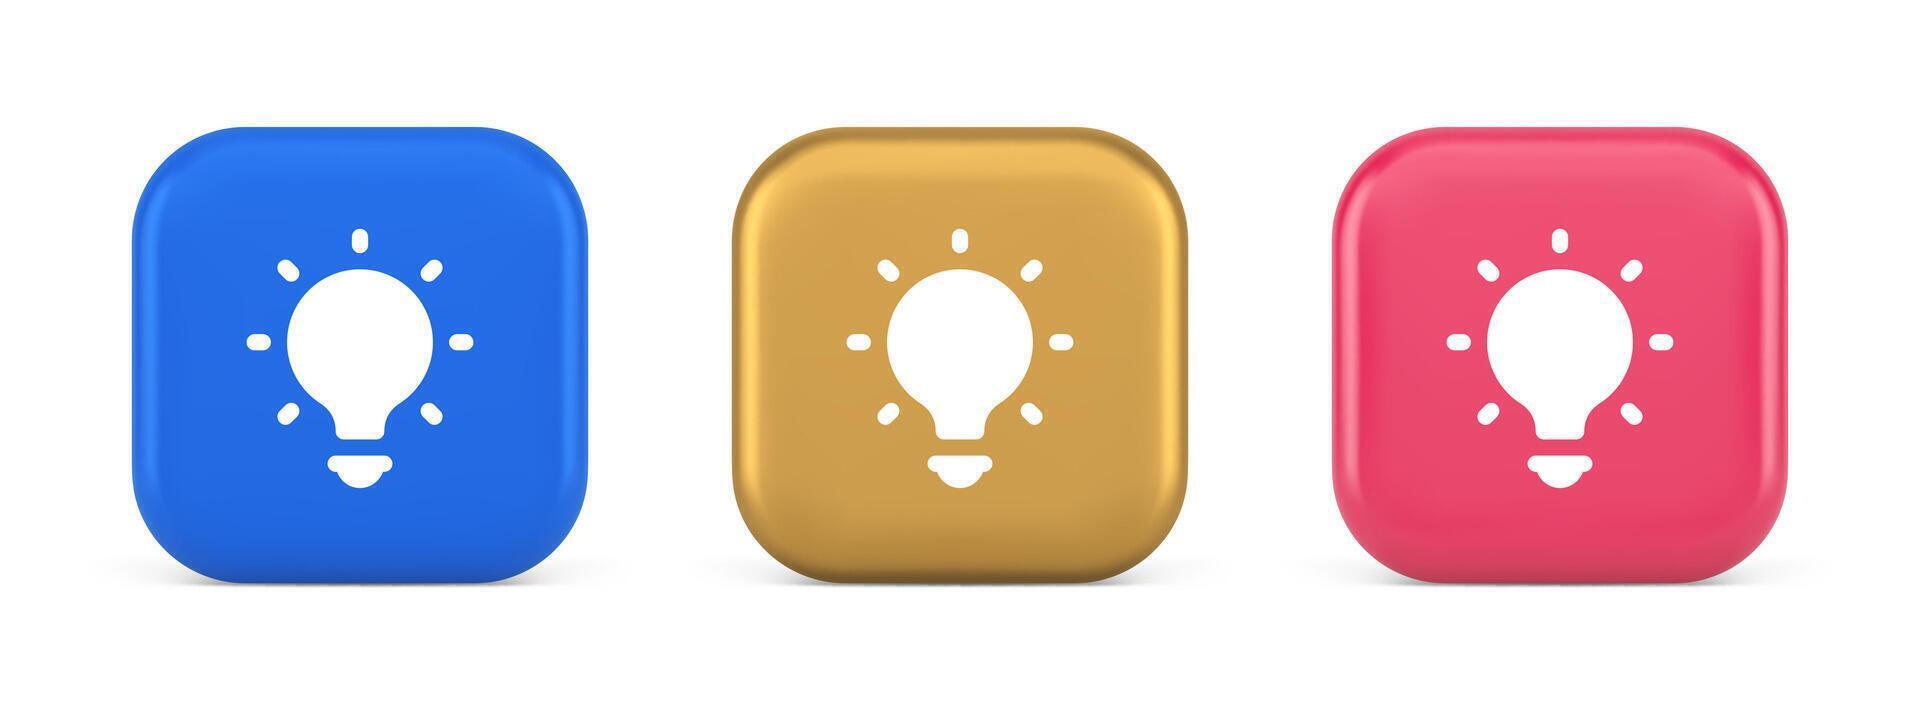 leggero lampadina illuminato innovazione idea pulsante di brainstorming creativo soluzione 3d icona vettore